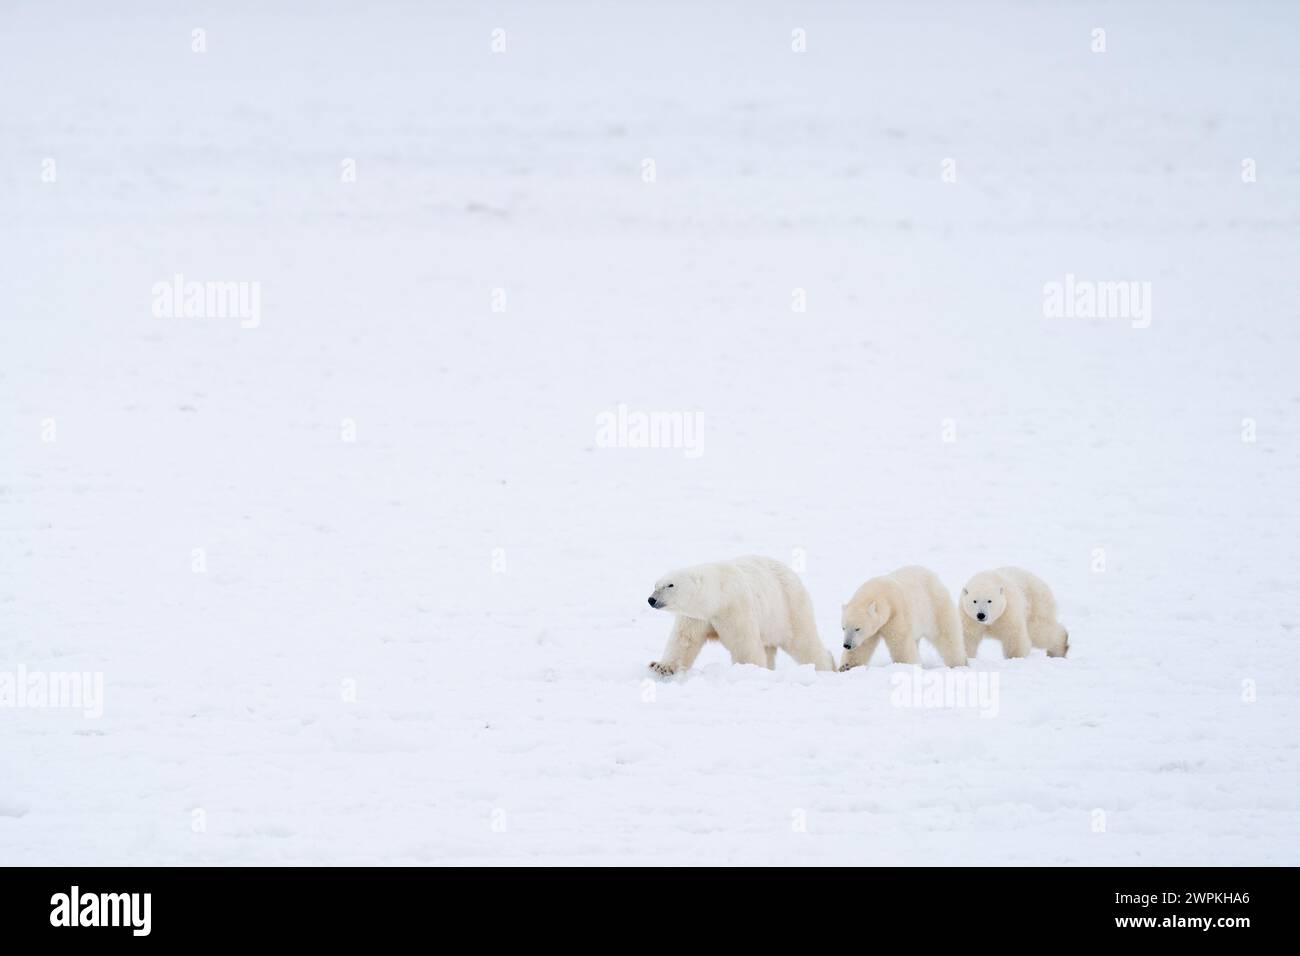 Nous marchons dans une ligne CANADA images ADORABLES de deux ours polaires jouant-se battant l'un avec l'autre vous fera rire. Vers deux ans, ces bea Banque D'Images